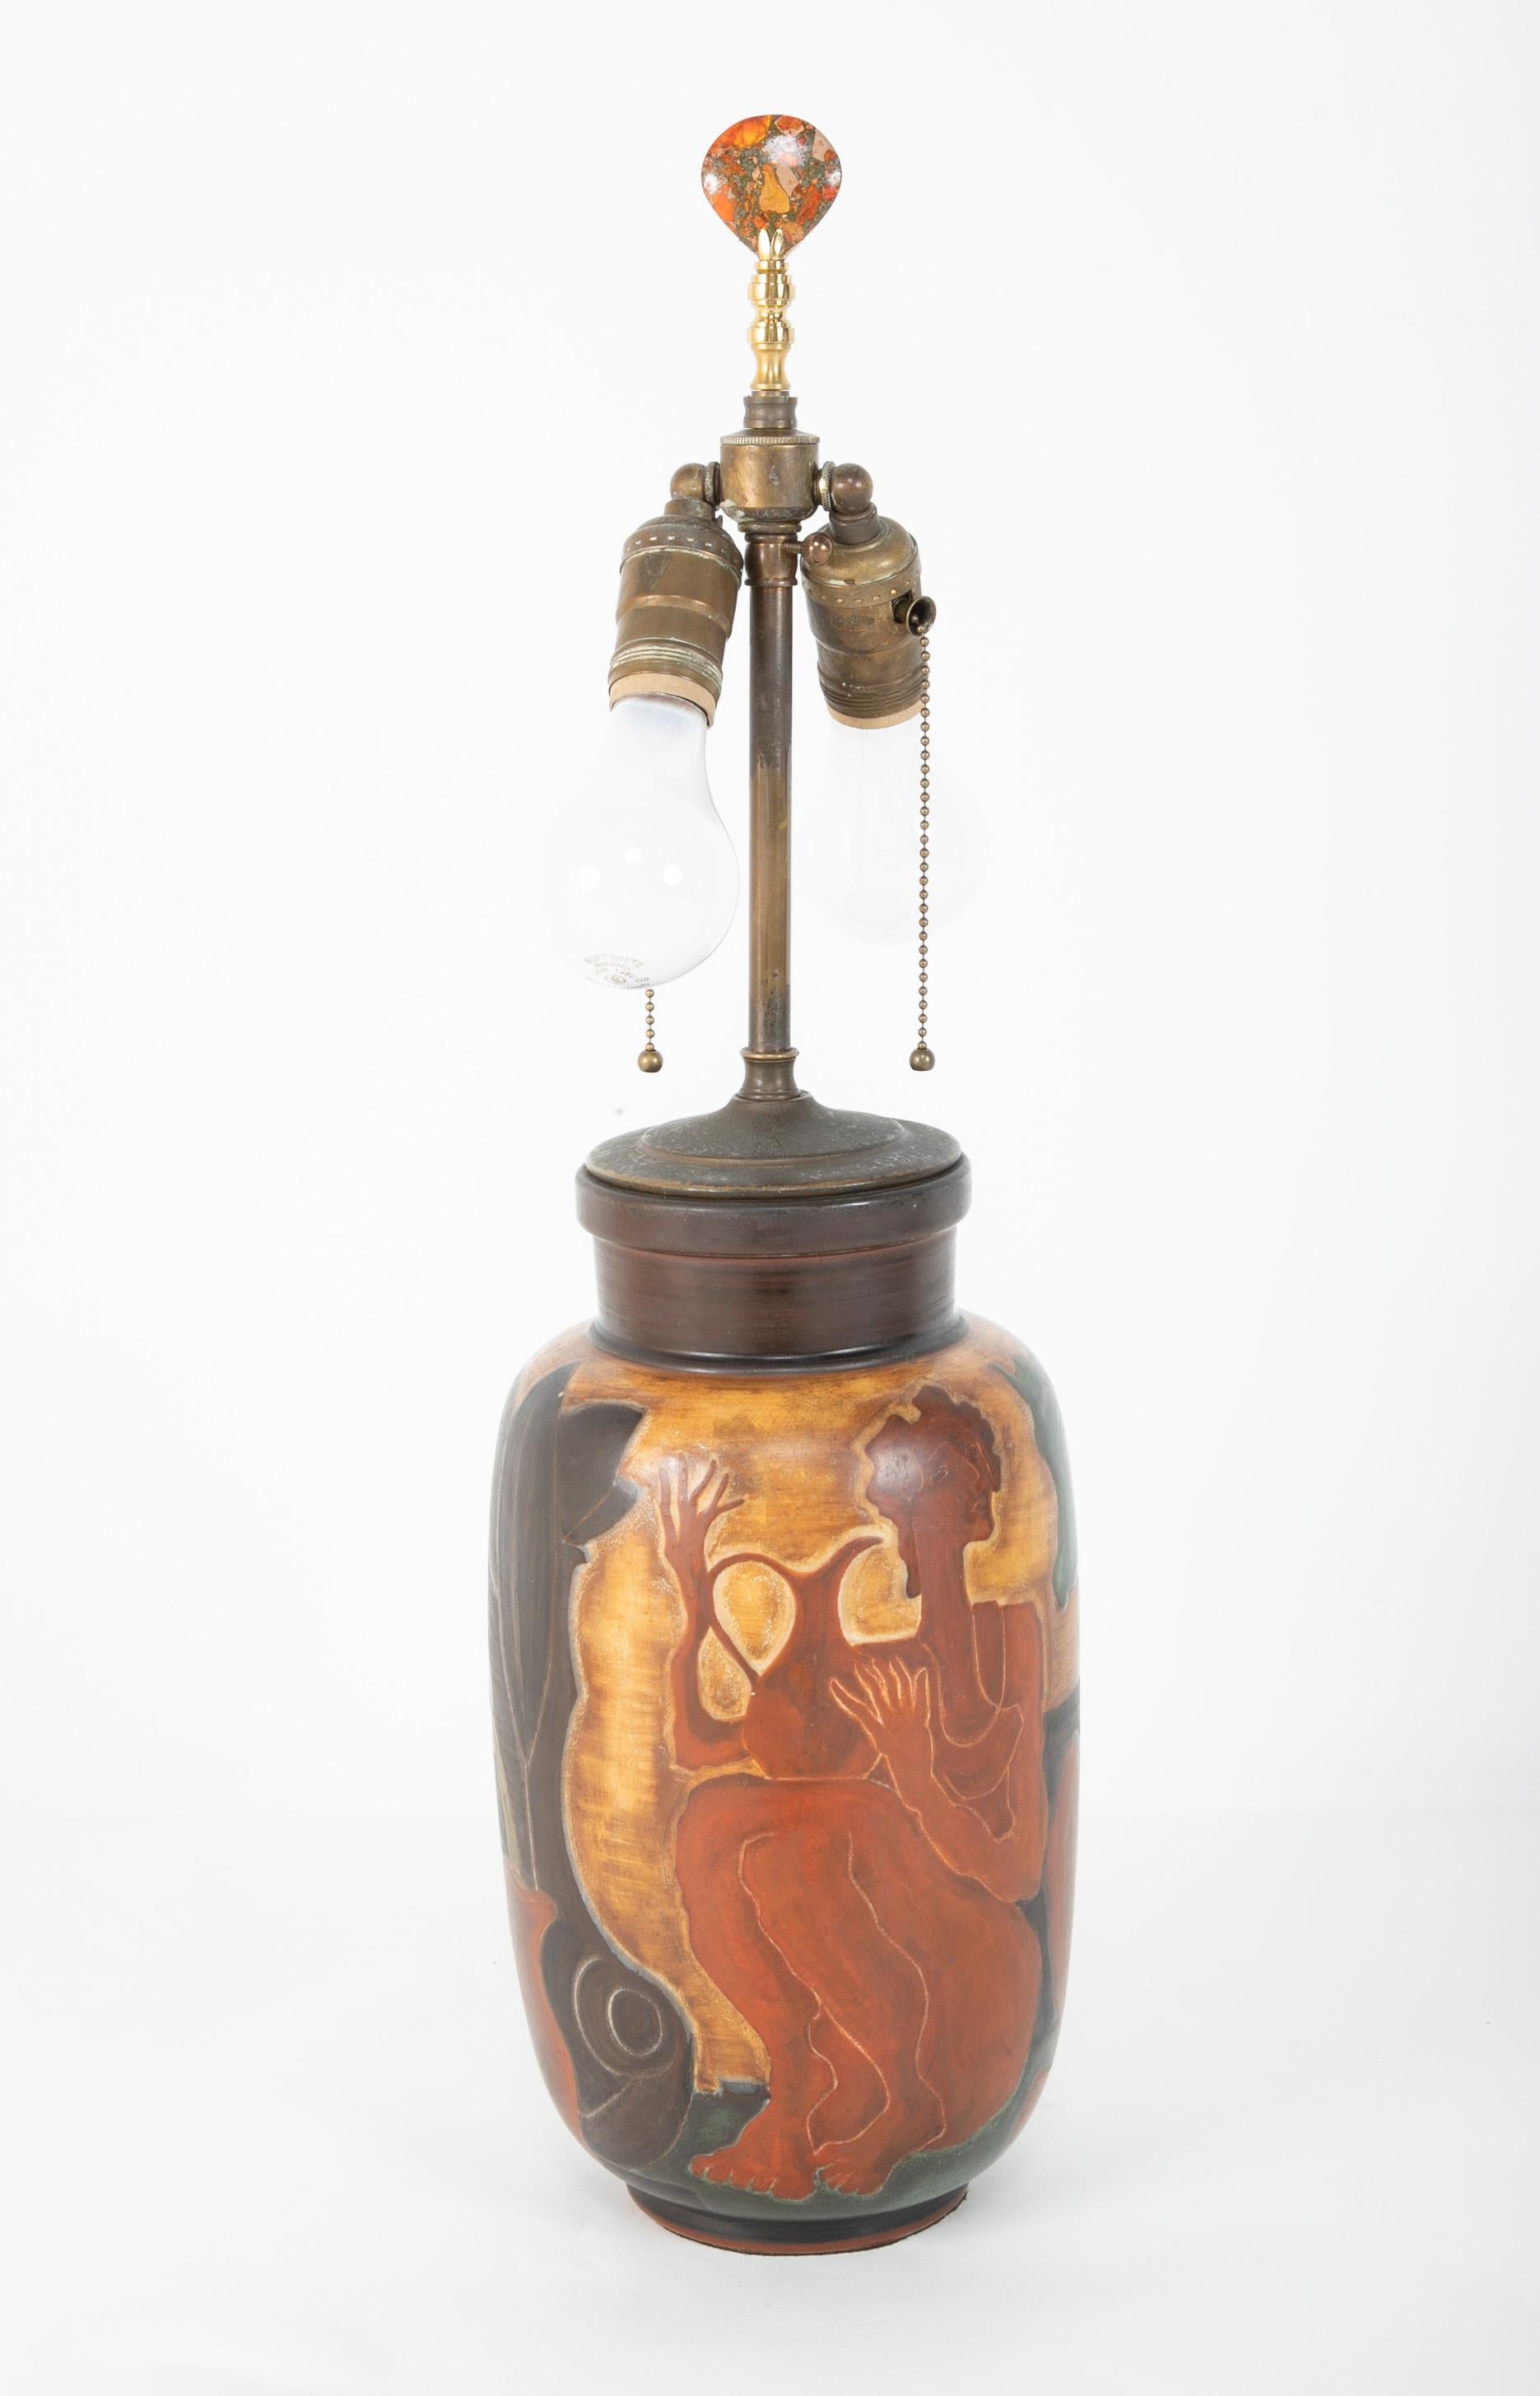 Beaux Arts Andre Plantard, Sèvres Porcelain Vase now a Lamp